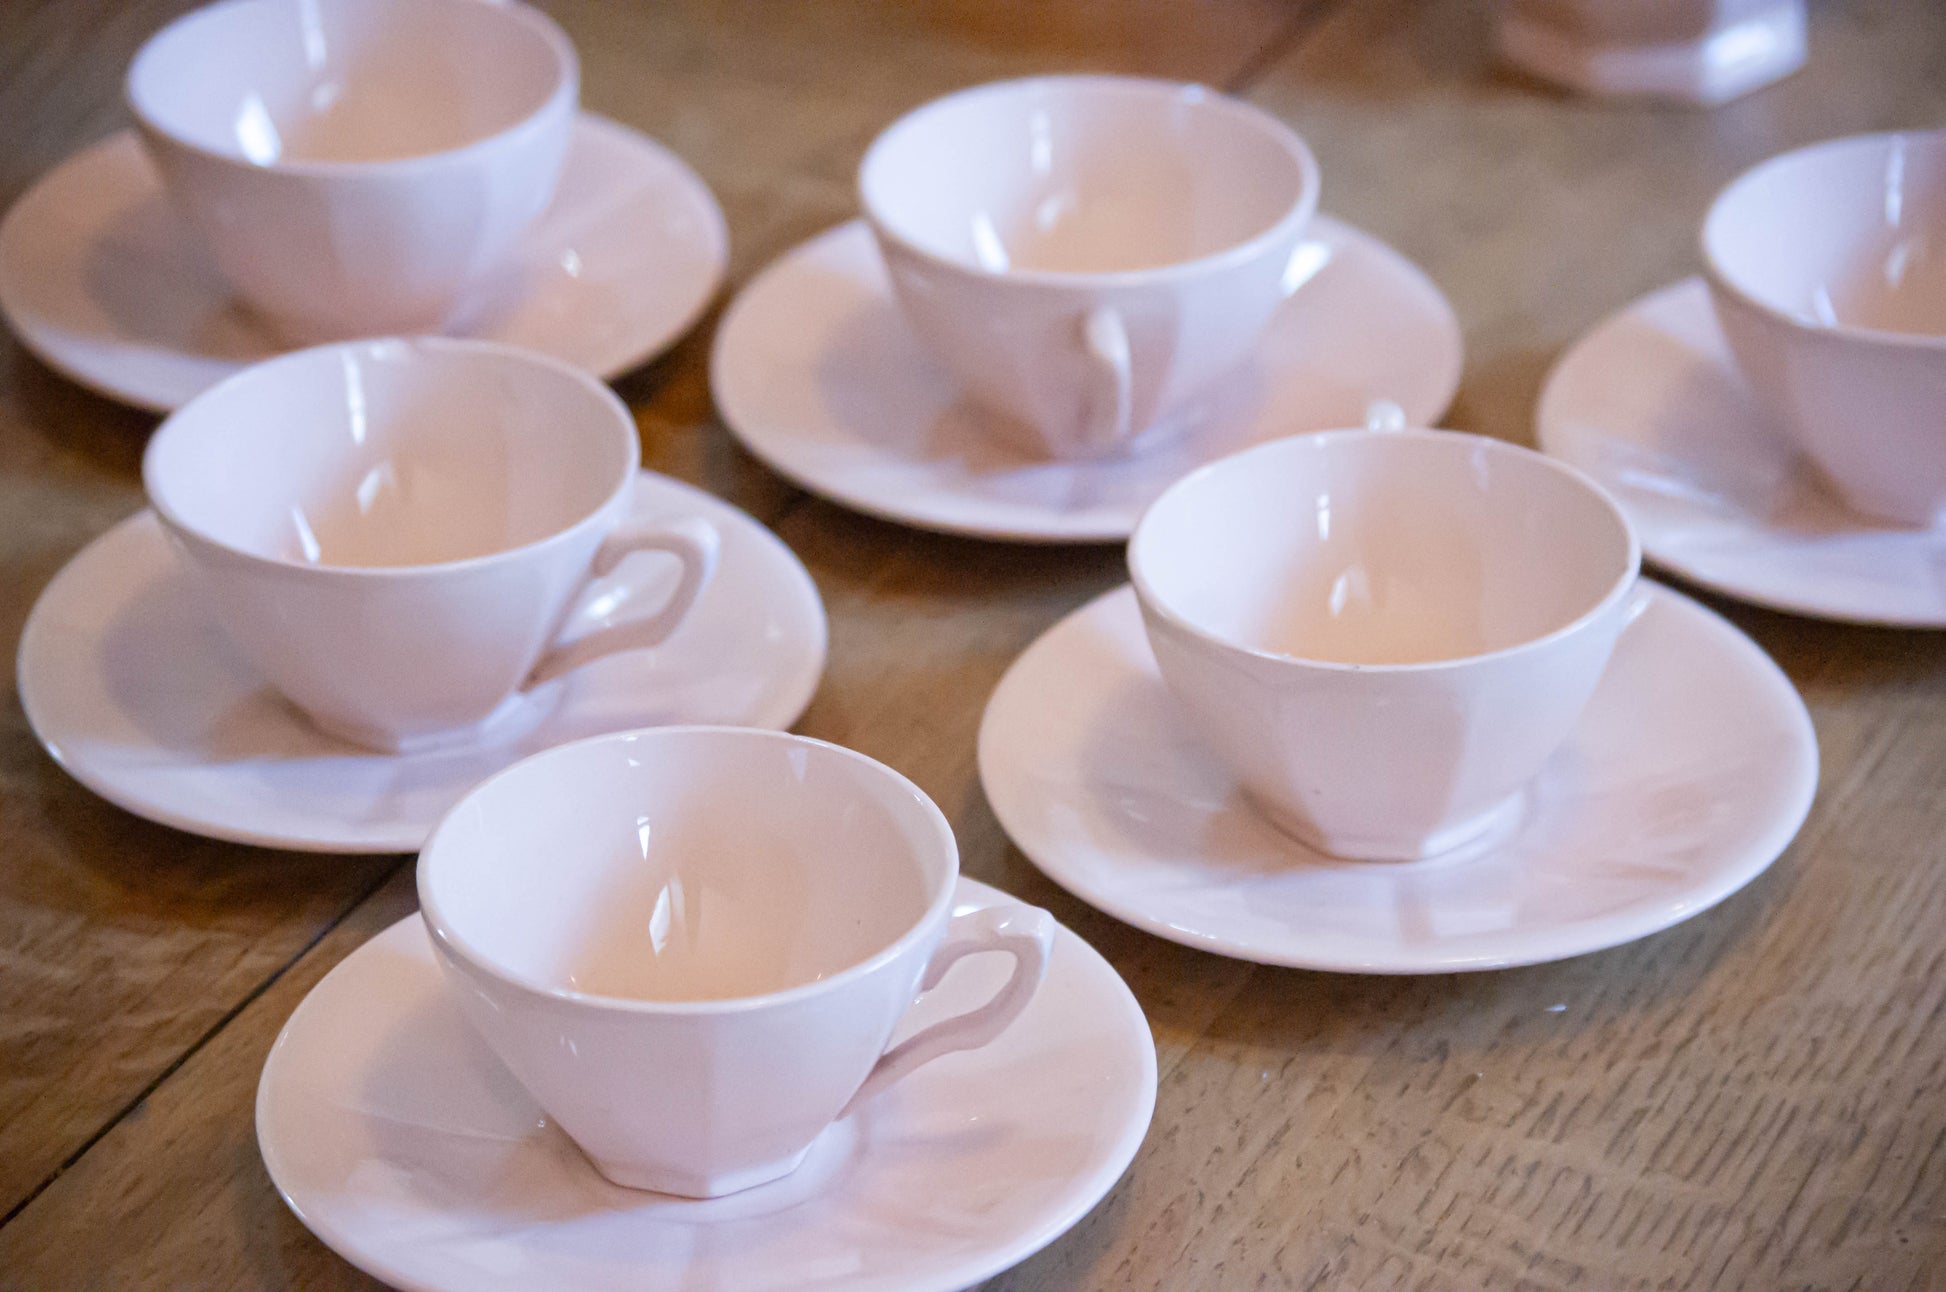 Ensemble à thé Digoin, une théière, un pot à lait, un sucrier et 12 tasses et sous tasses. Très bon état général, rose pale, quelques légers éclats, visible sur une photo.